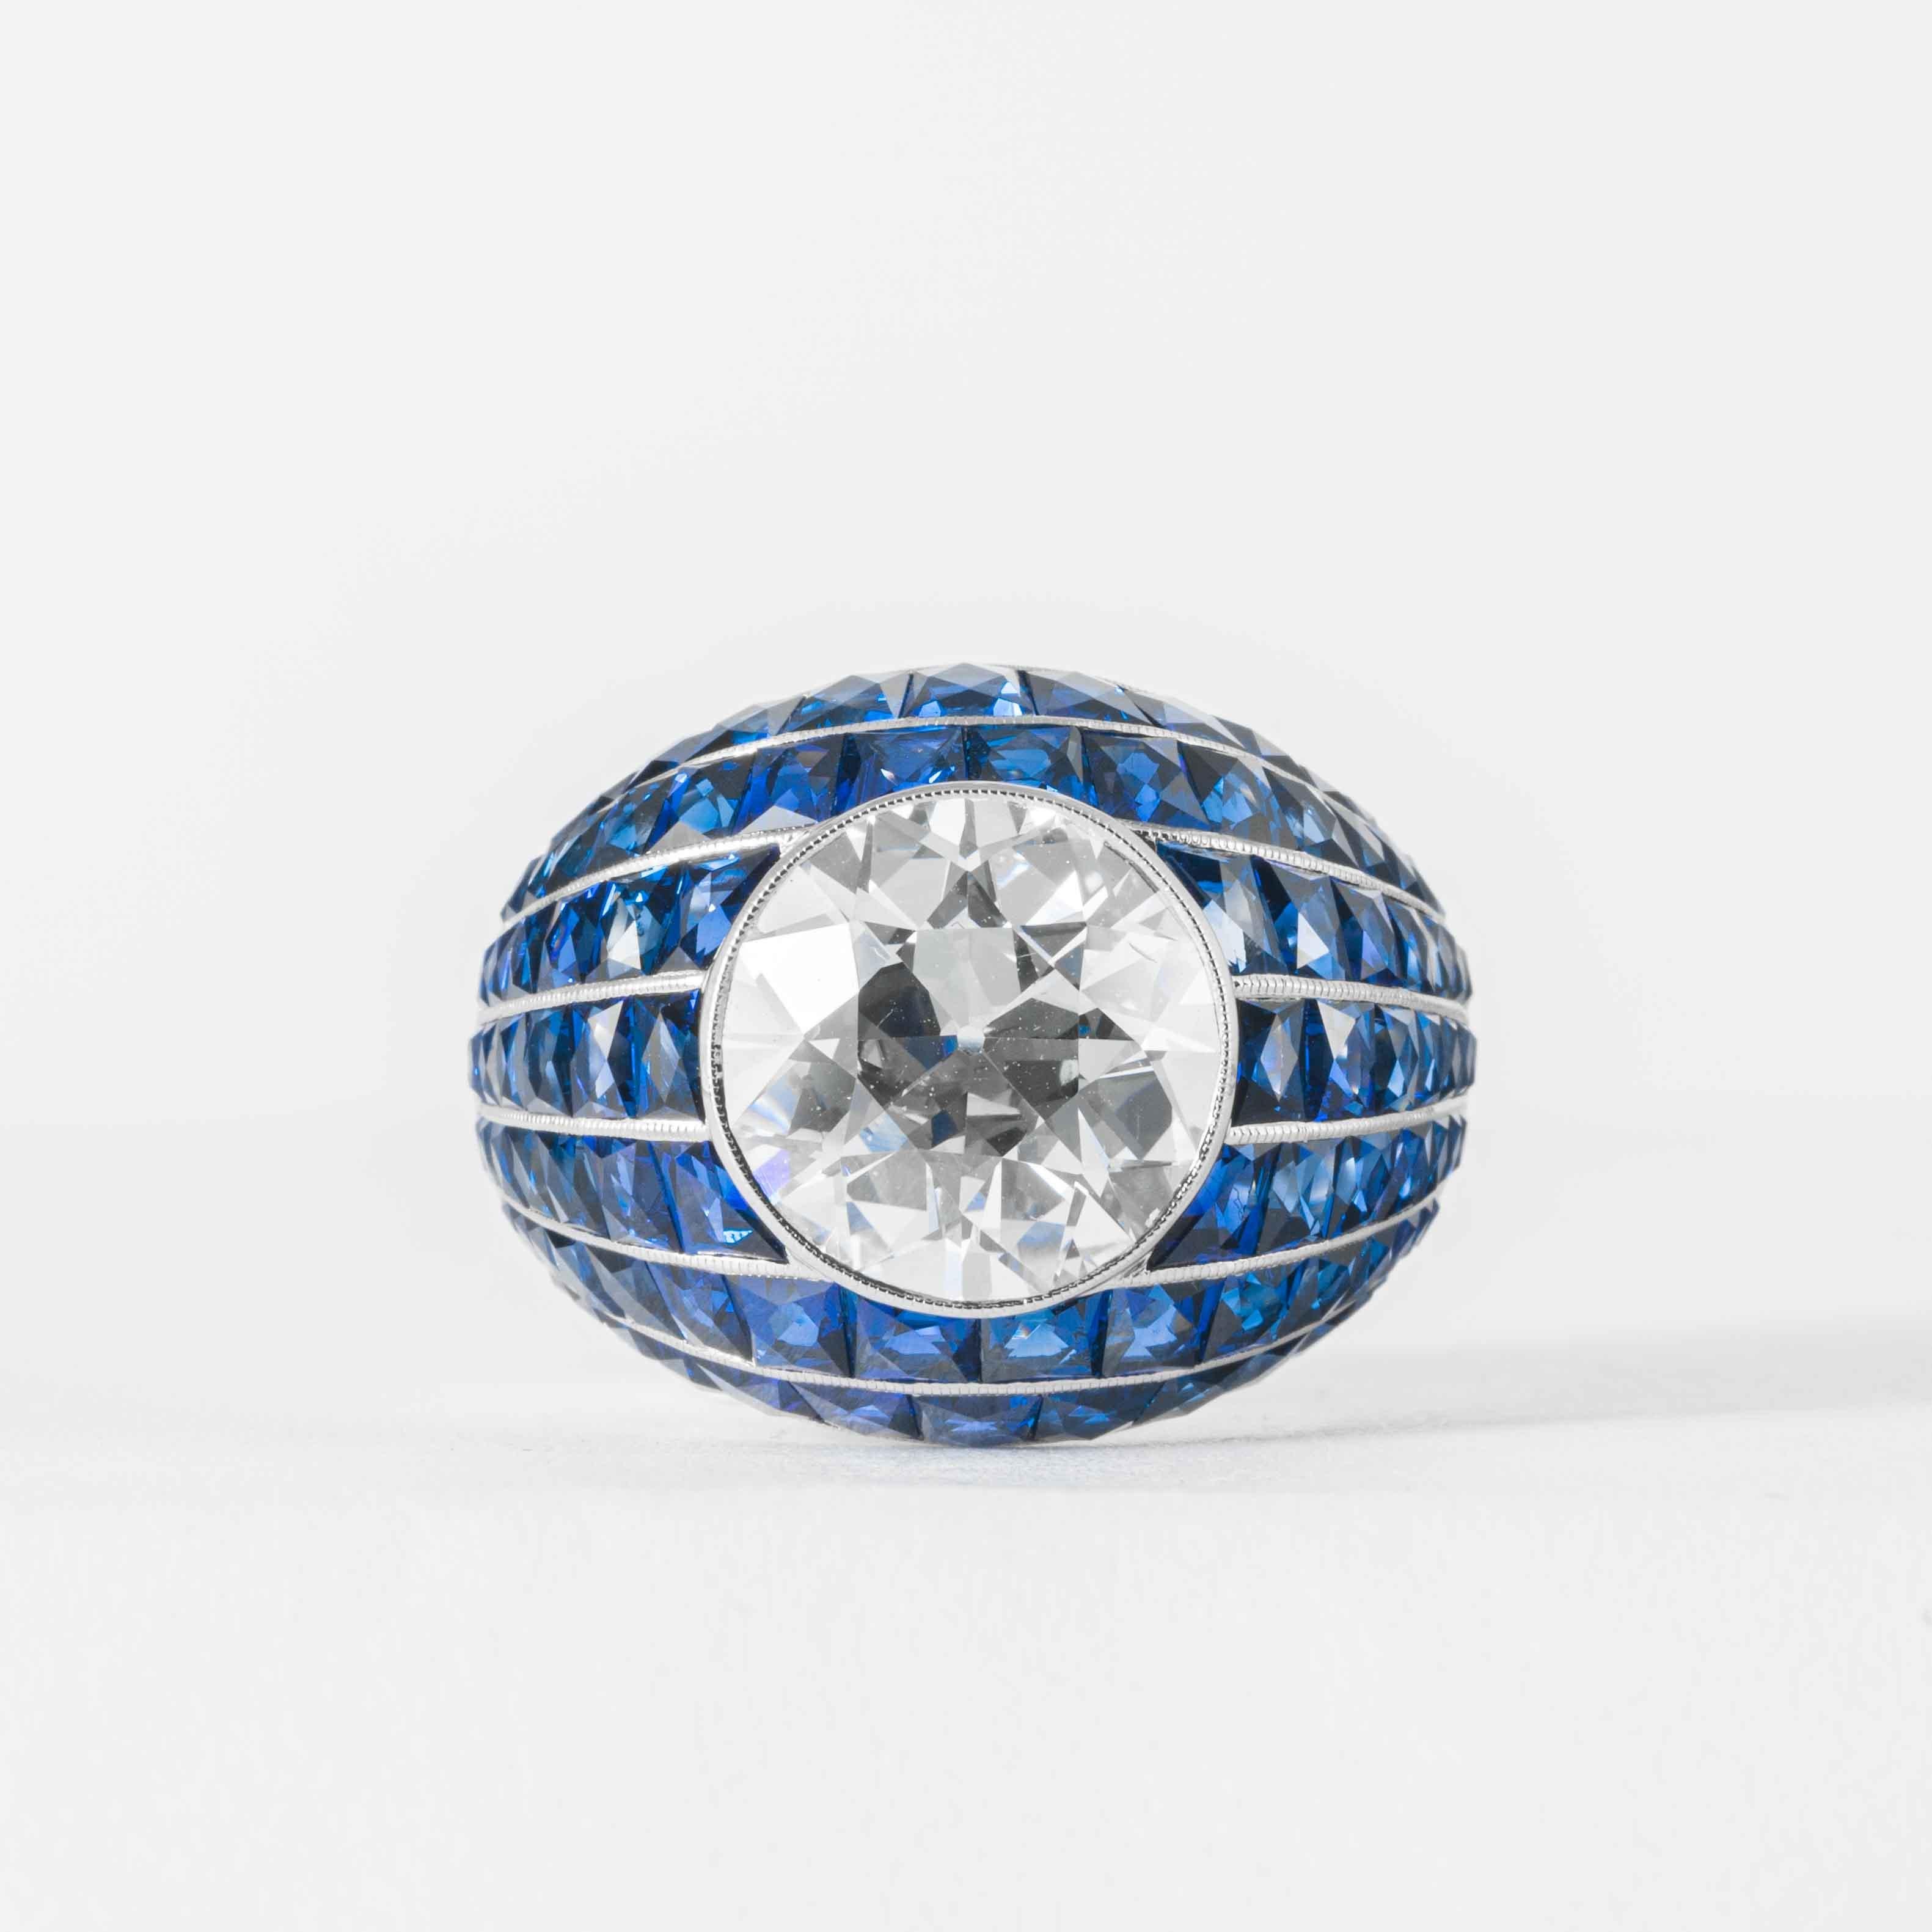 Dieser elegante und klassische Diamantring wird von Shreve, Crump & Low angeboten. Dieser 5,03 Karat GIA-zertifizierte J VS2-Diamant im alten europäischen Schliff ist in einem handgefertigten Ring im Bombenstil von Shreve, Crump & Low mit blauem